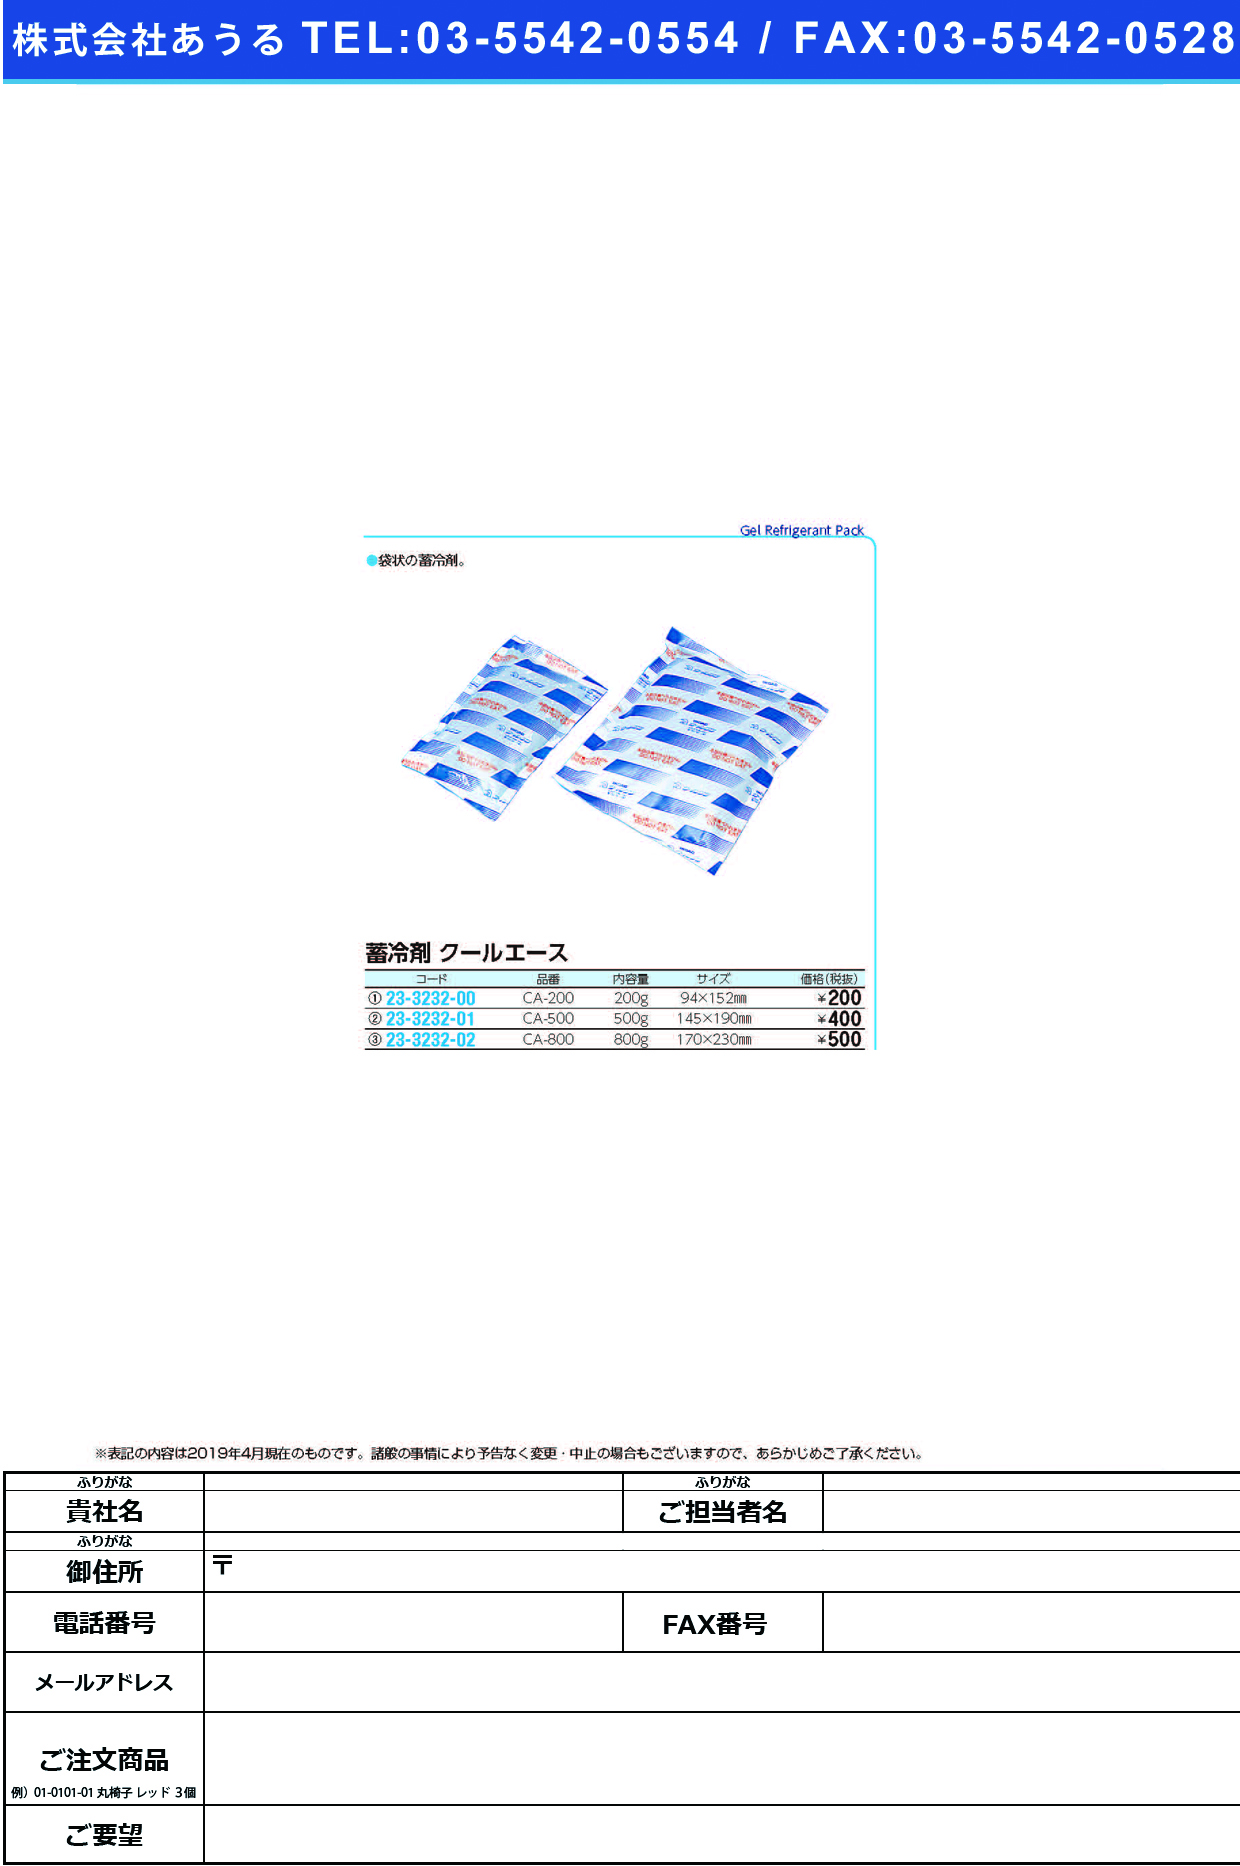 (23-3232-00)蓄冷剤クールエース CA-200(200G) ﾁｸﾚｲｻﾞｲｸｰﾙｴｰｽ【1個単位】【2019年カタログ商品】